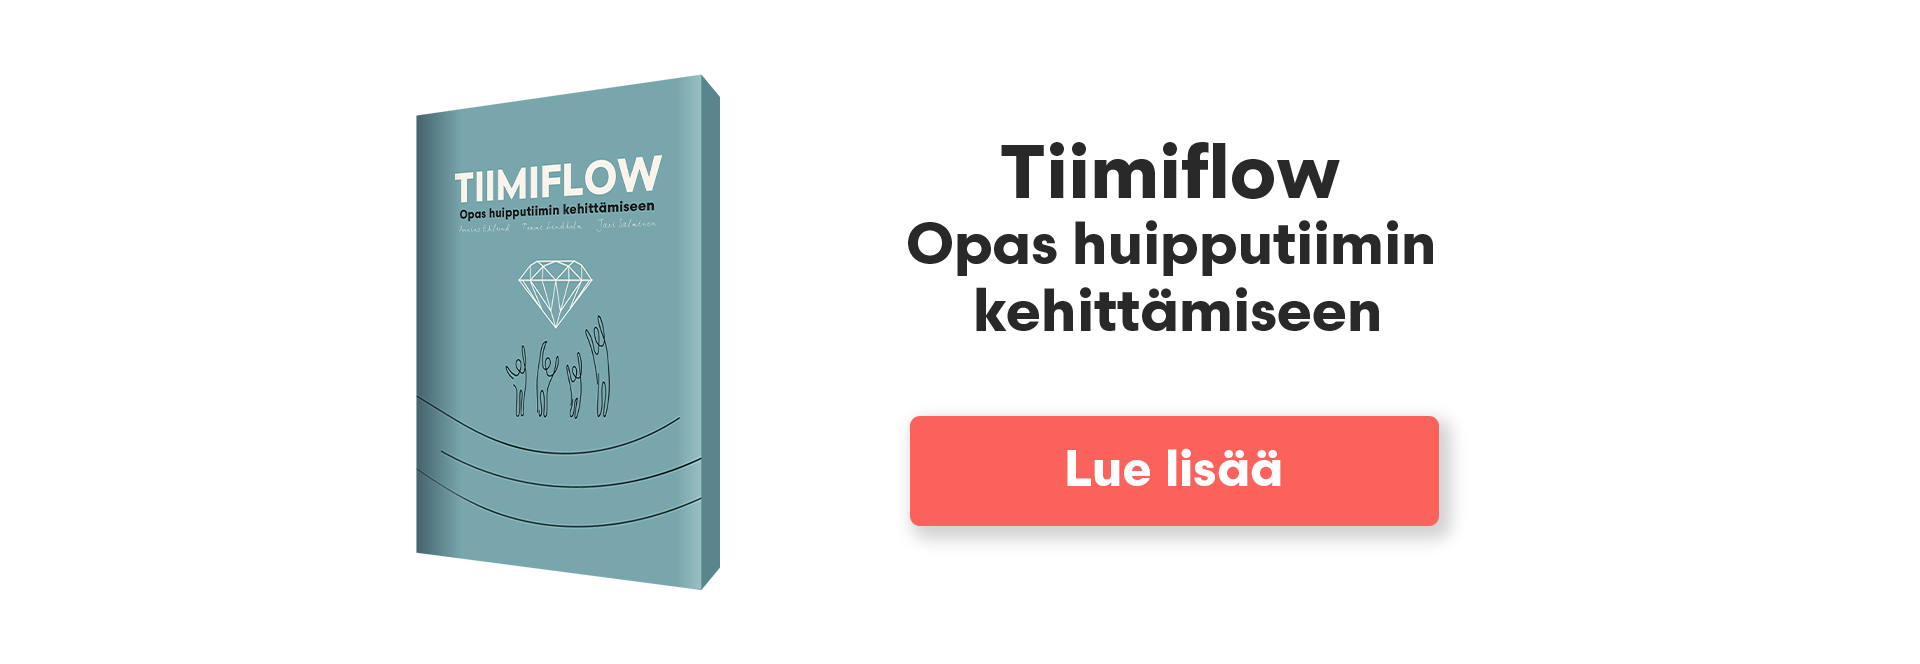 Tiimiflow - opas